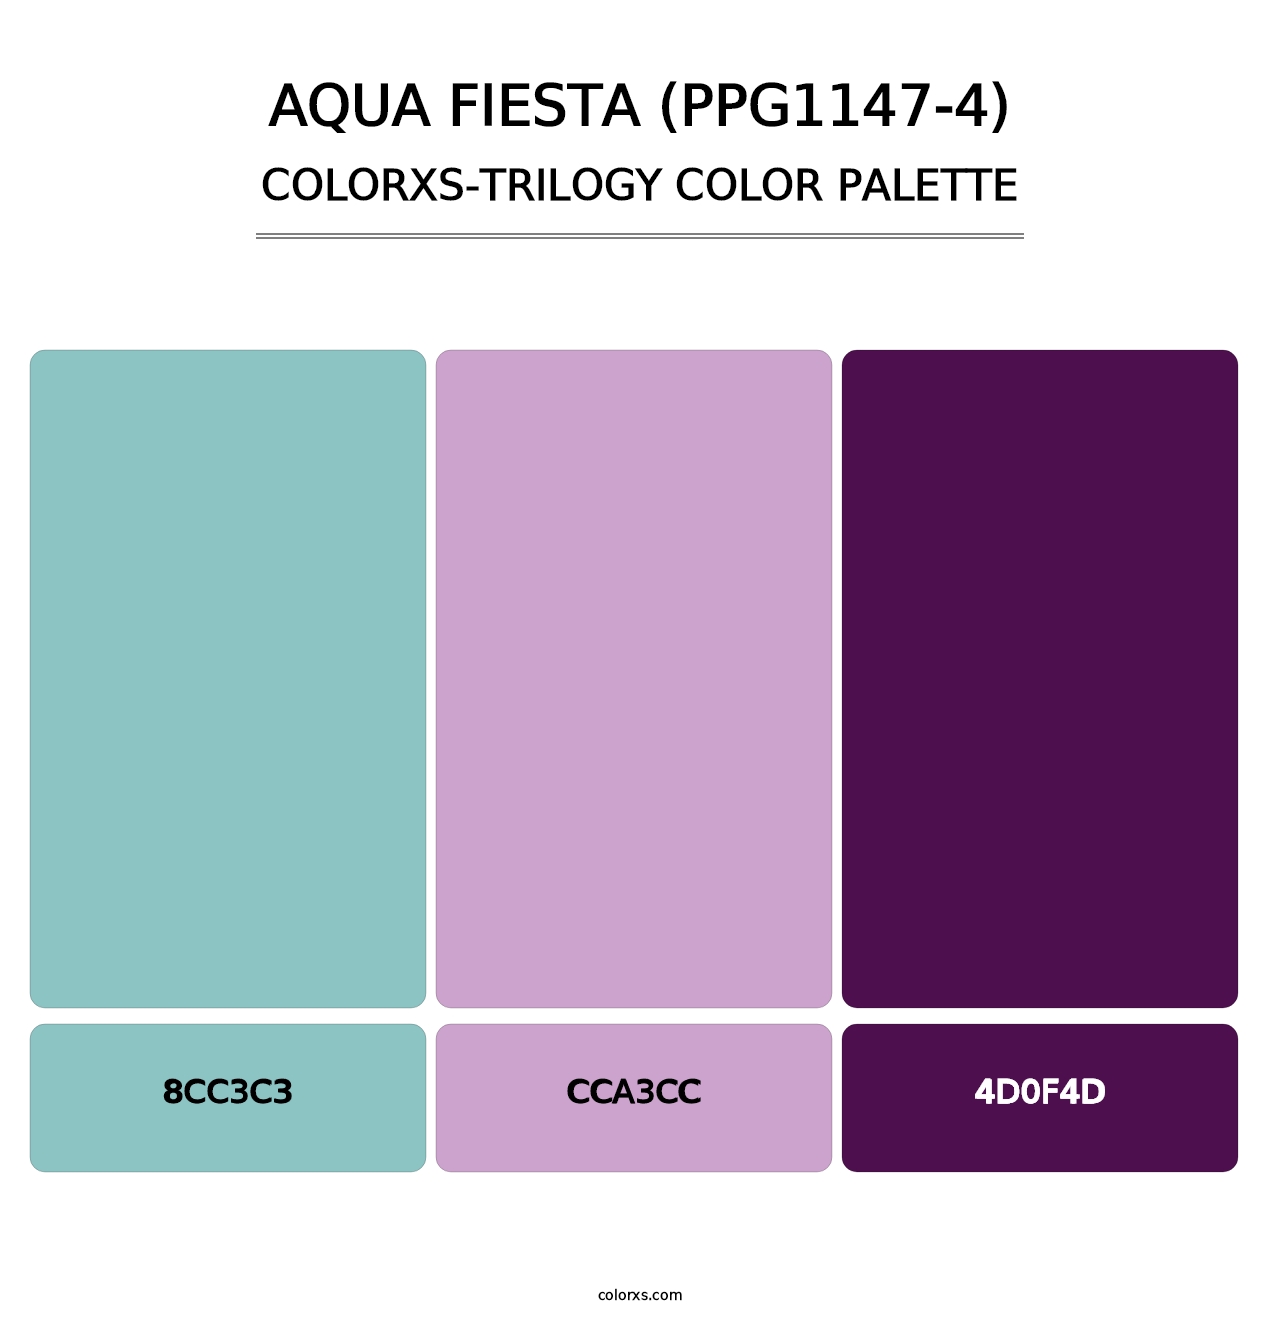 Aqua Fiesta (PPG1147-4) - Colorxs Trilogy Palette